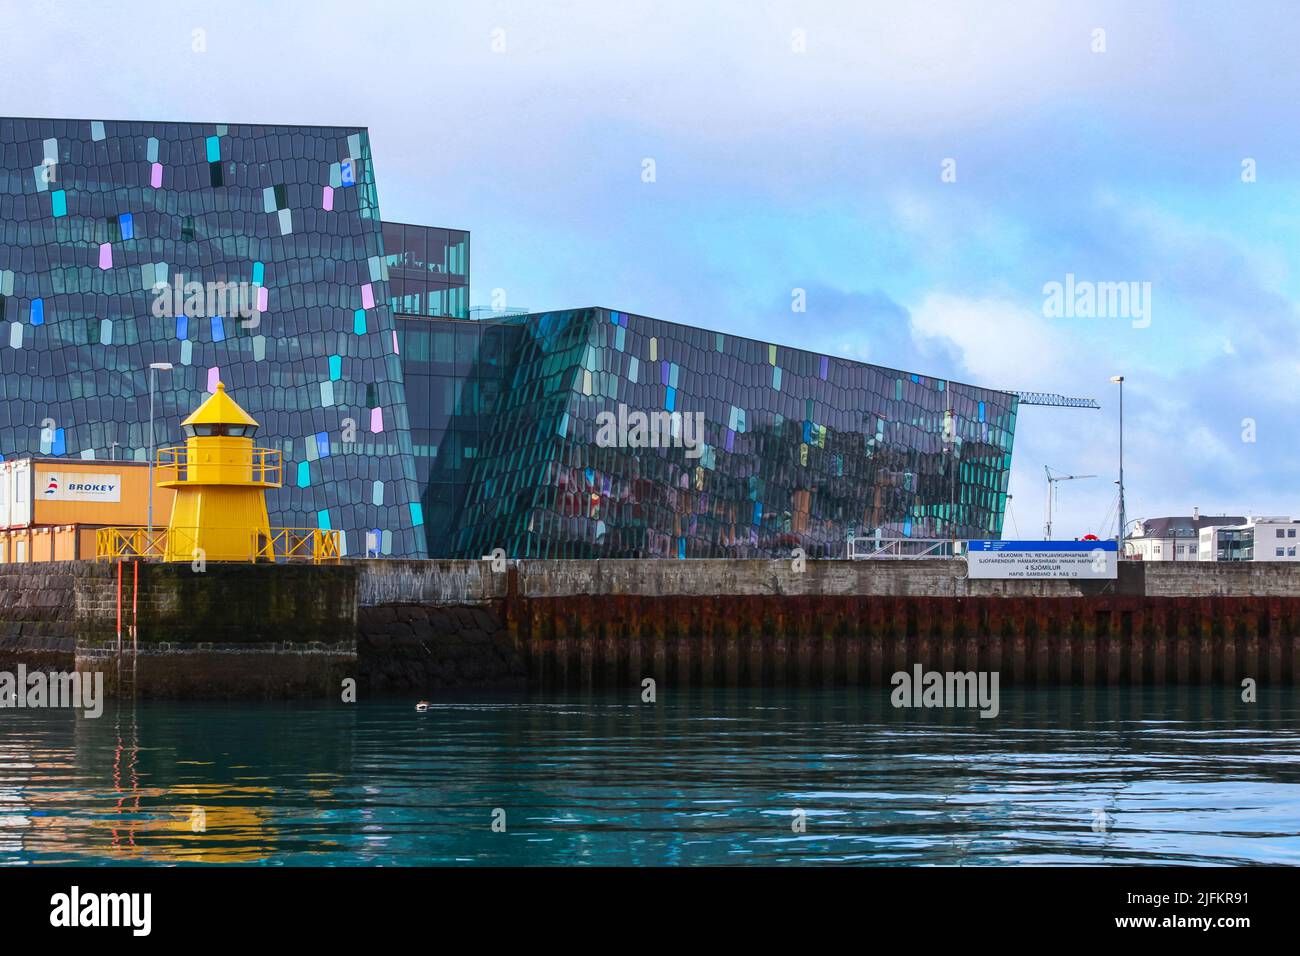 Reykjavik, Islanda - 4 aprile 2017: La torre gialla del faro si trova di fronte alla sala concerti e al centro conferenze Harpa Foto Stock